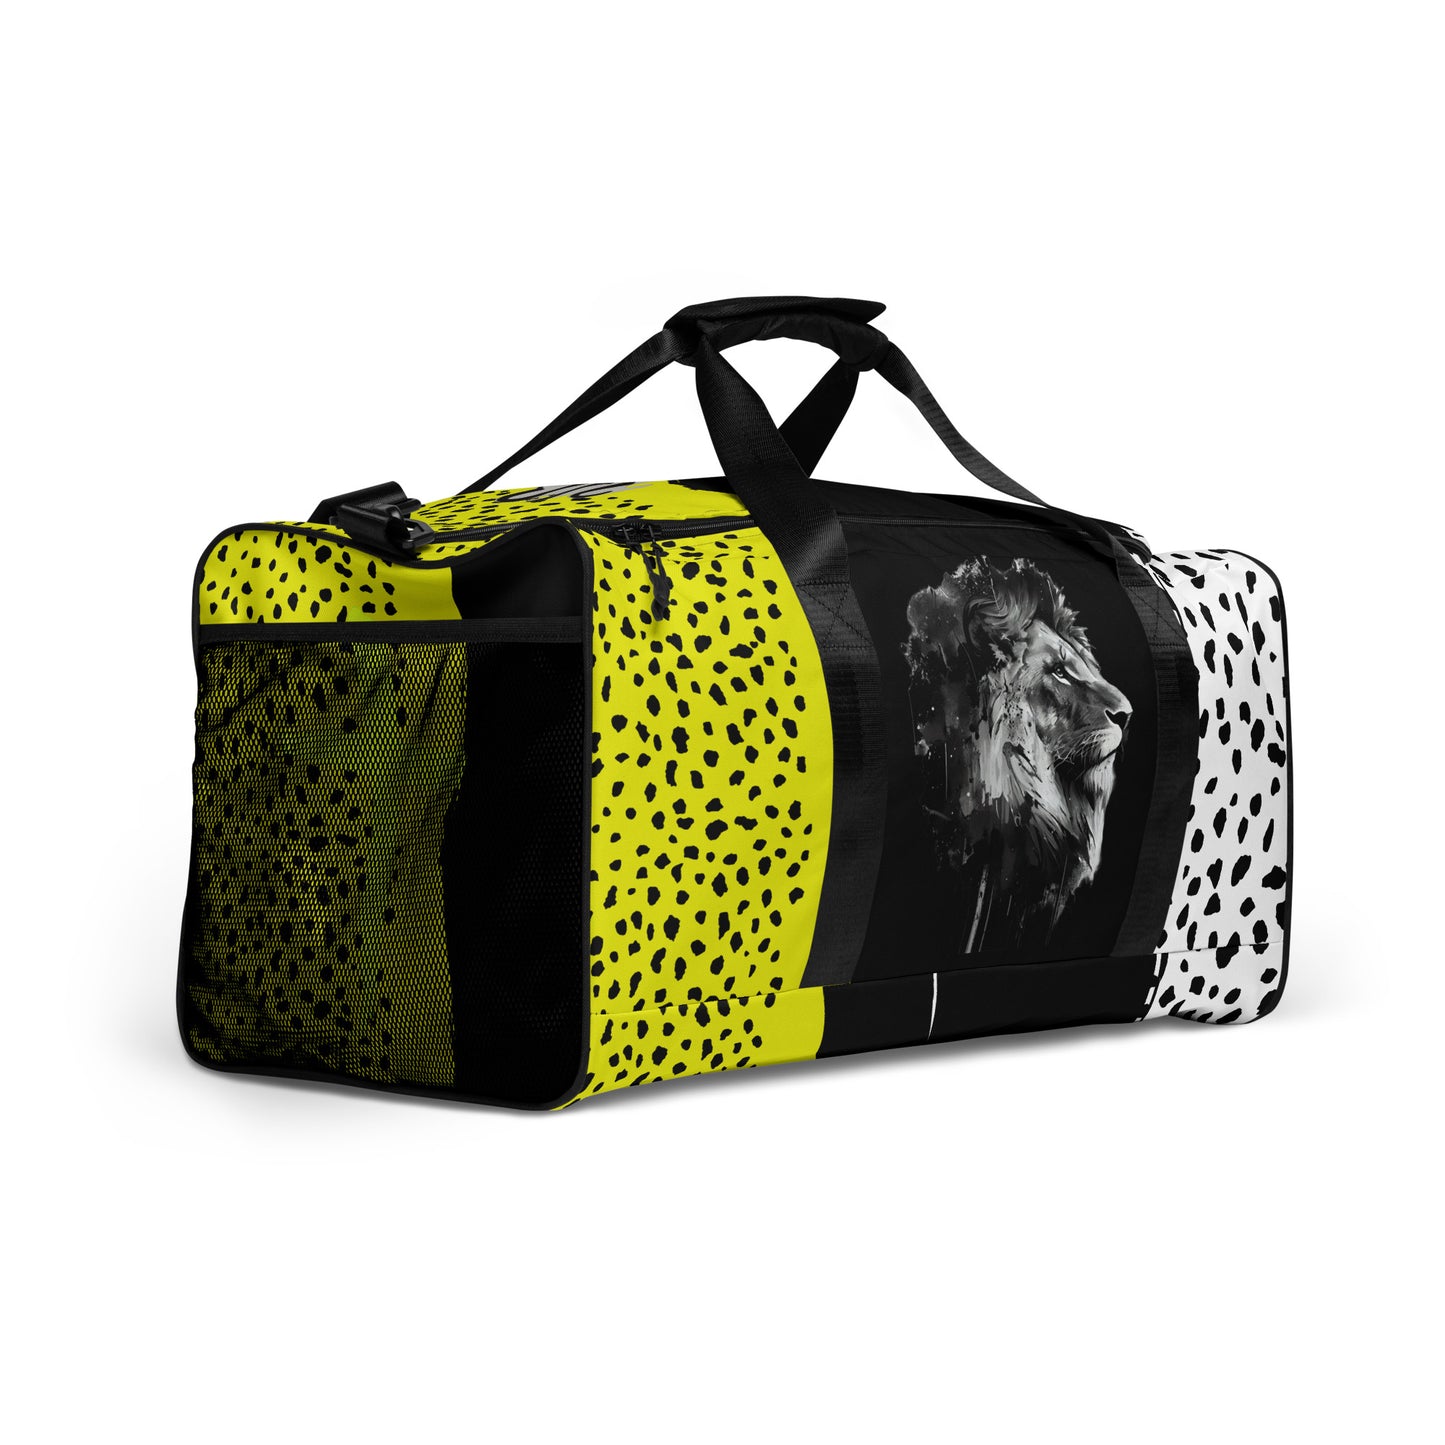 Regal Lion- Duffle bag